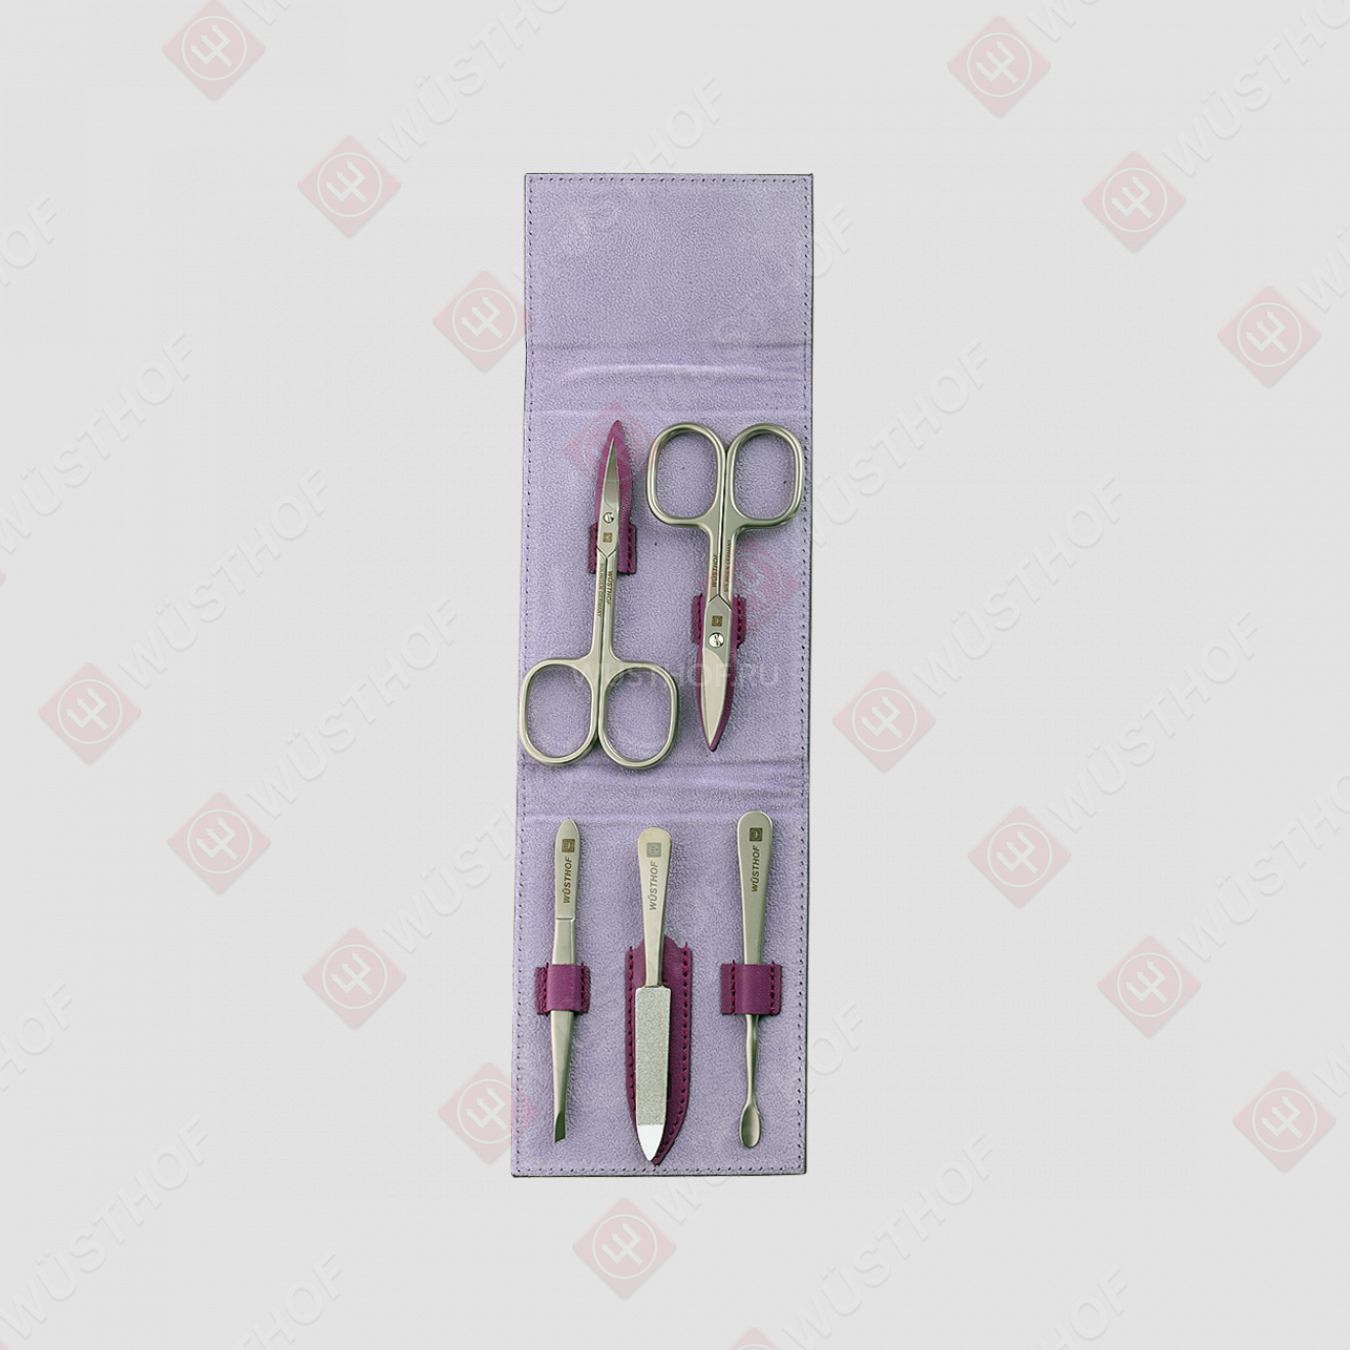 Набор маникюрный 5 предмета в мягком футляре, цвет фиолетовый, серия Manicure sets, WUESTHOF, Германия